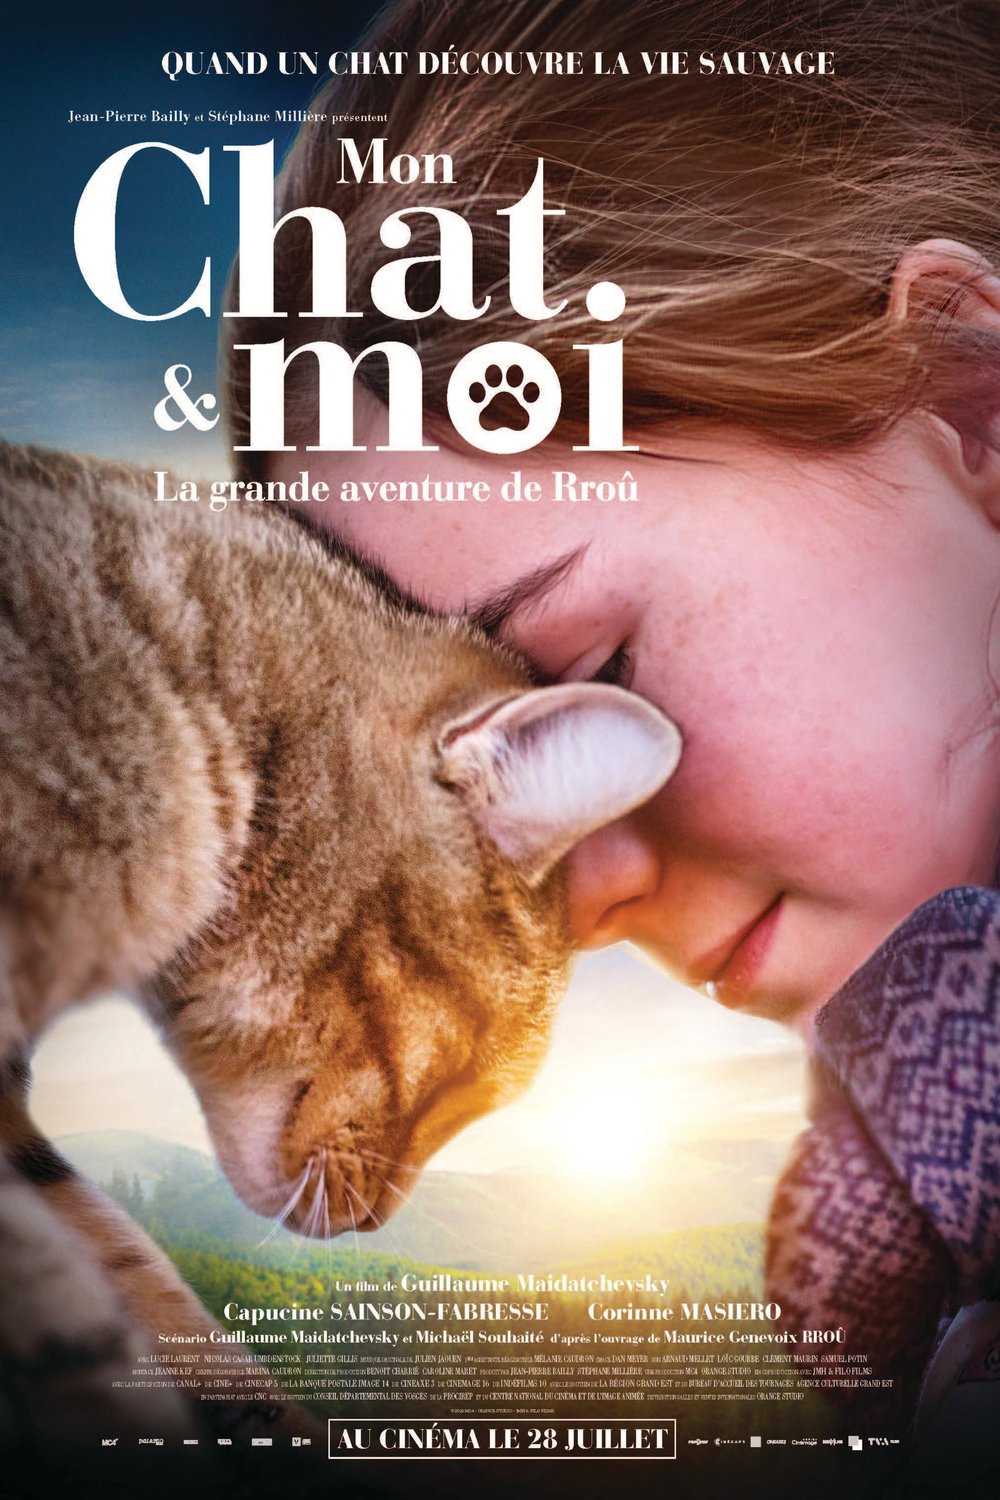 L'affiche du film A Cat's Life